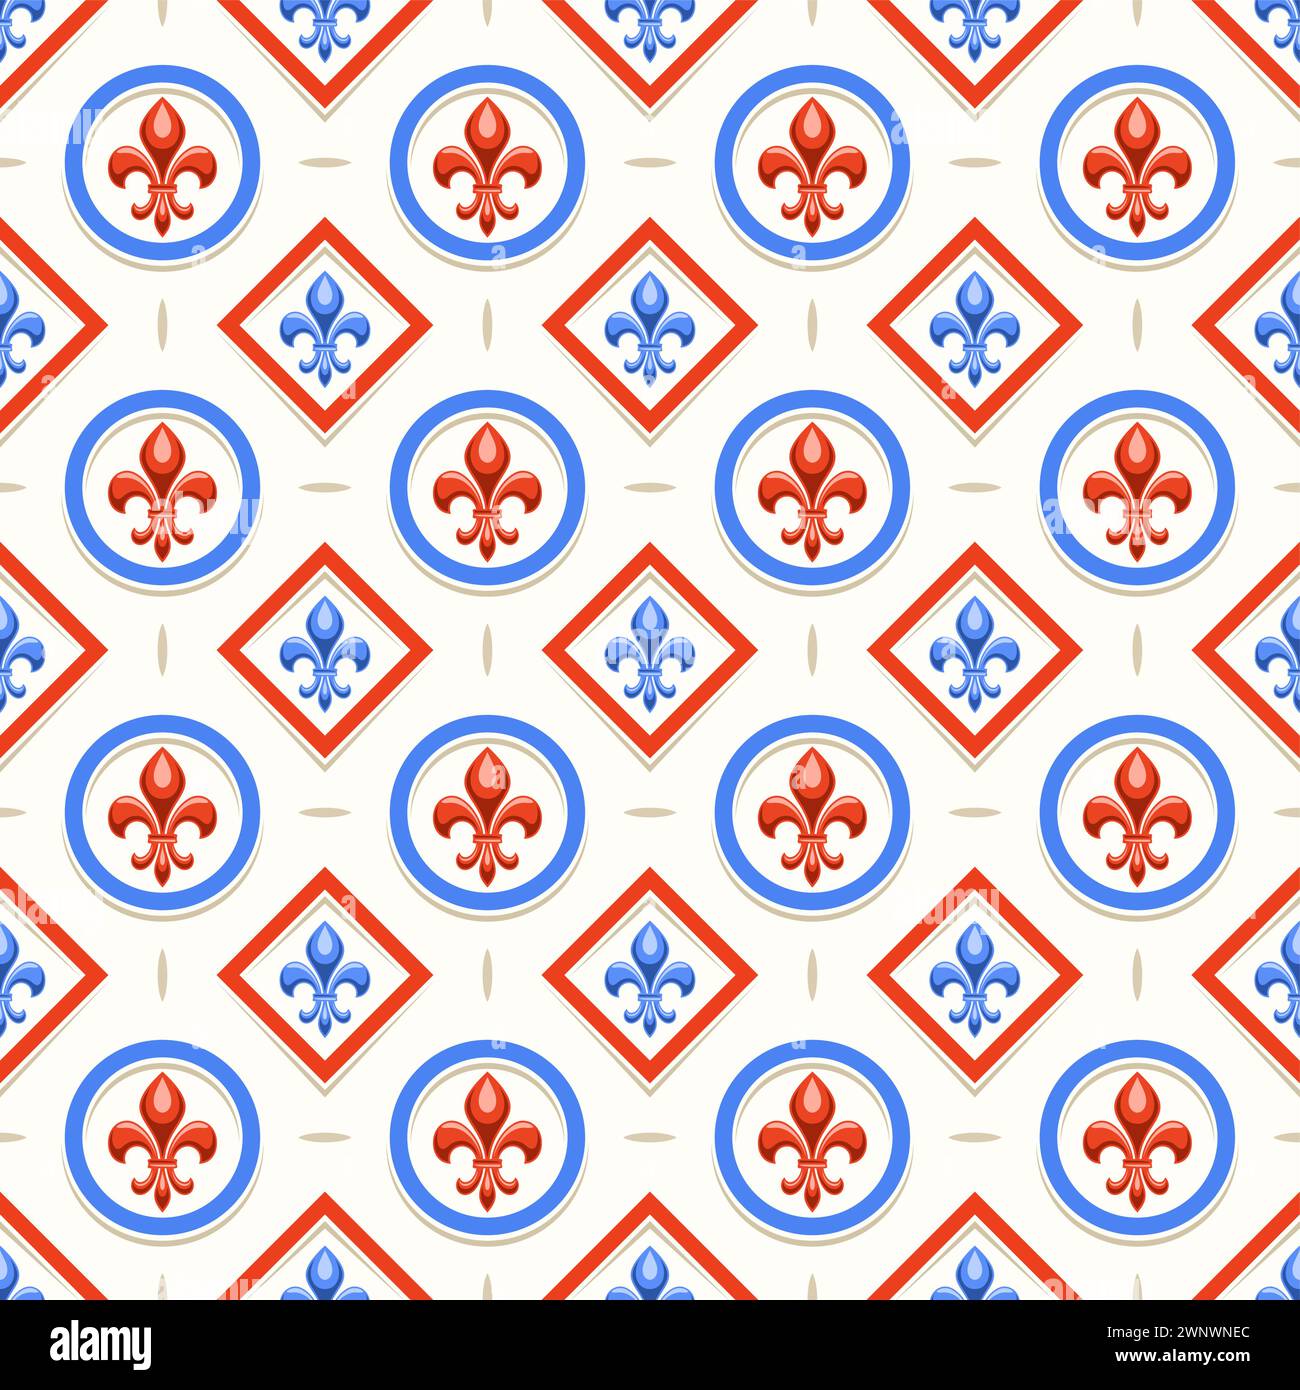 Vector Fleur de Lis Seamless Pattern, sfondo ripetuto con illustrazioni di pattern vintage con fleur de lis in celle circolari e rombo, po quadrato Illustrazione Vettoriale